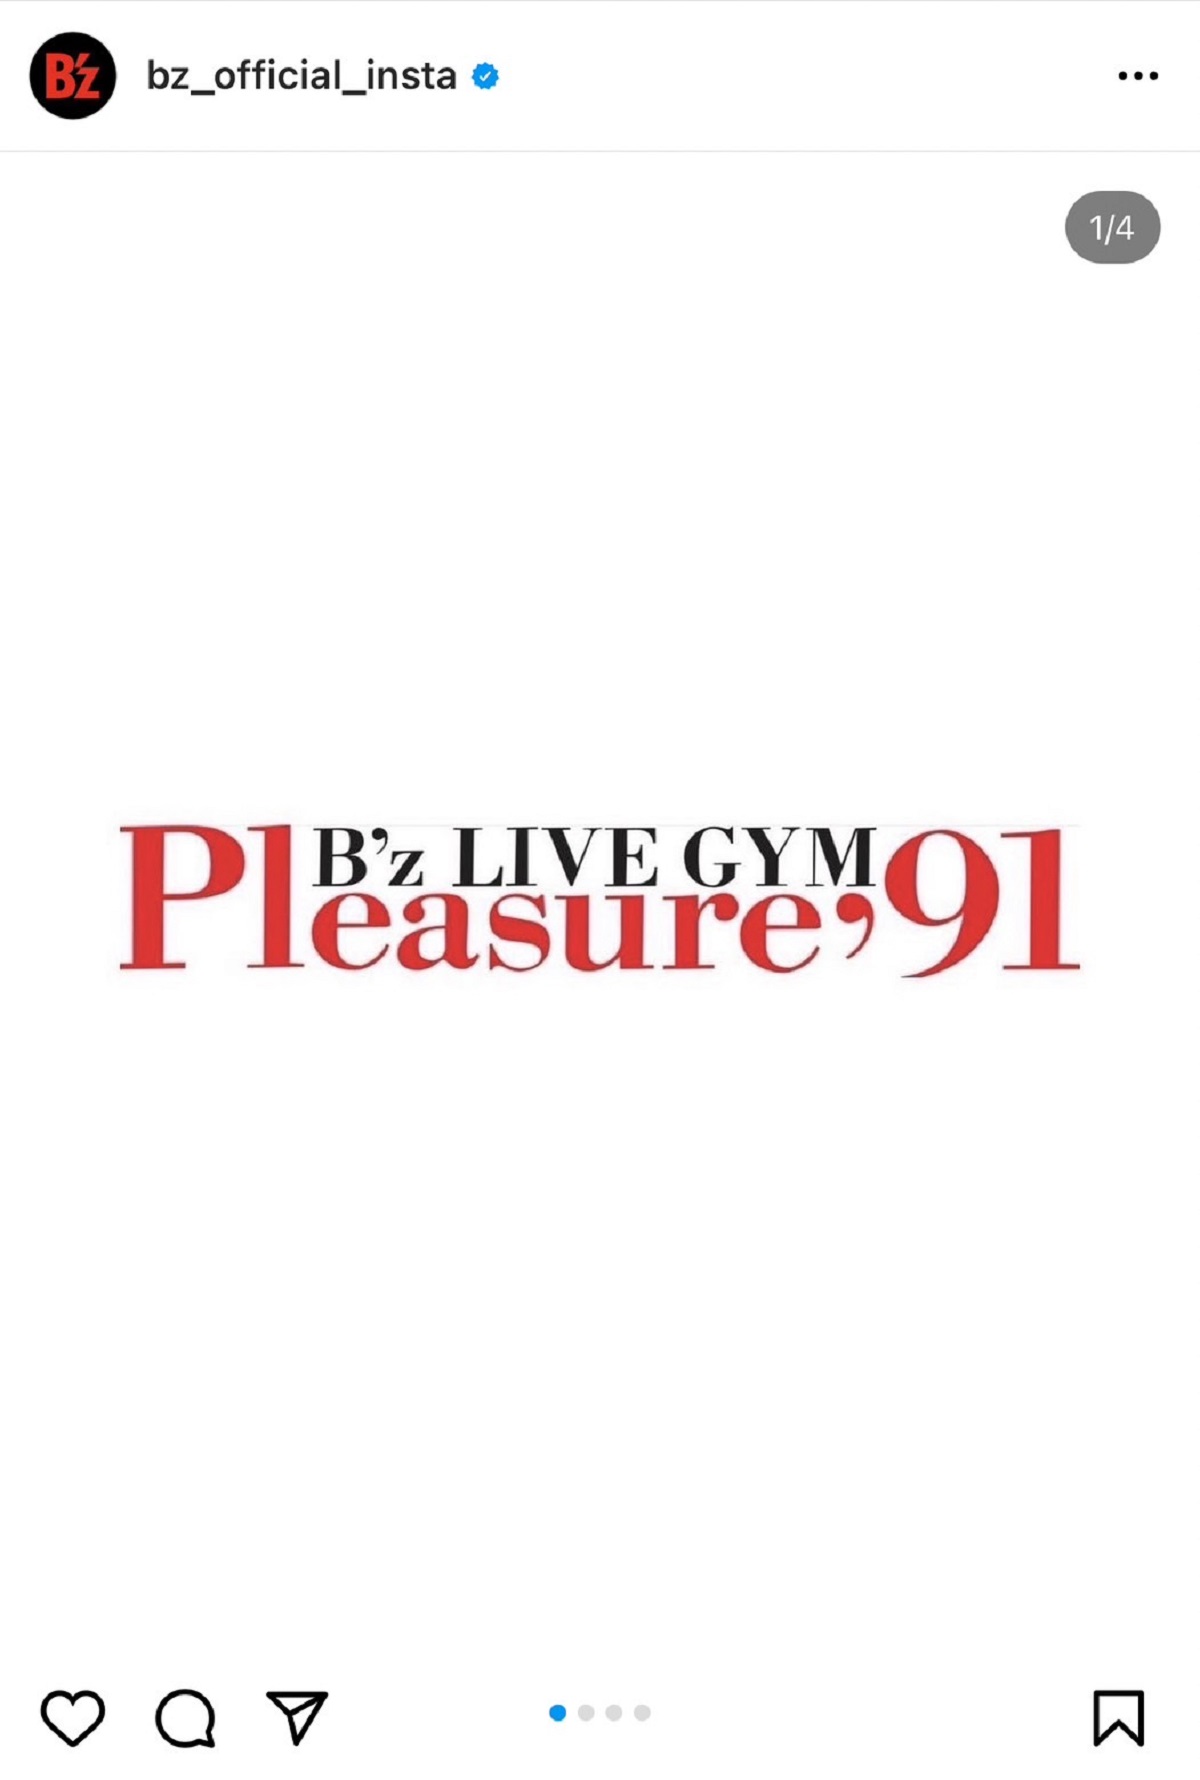 販売オーダー B'z ツアータオル松本孝弘稲葉浩志 '91 Pleasure LIVE-GYM ミュージシャン